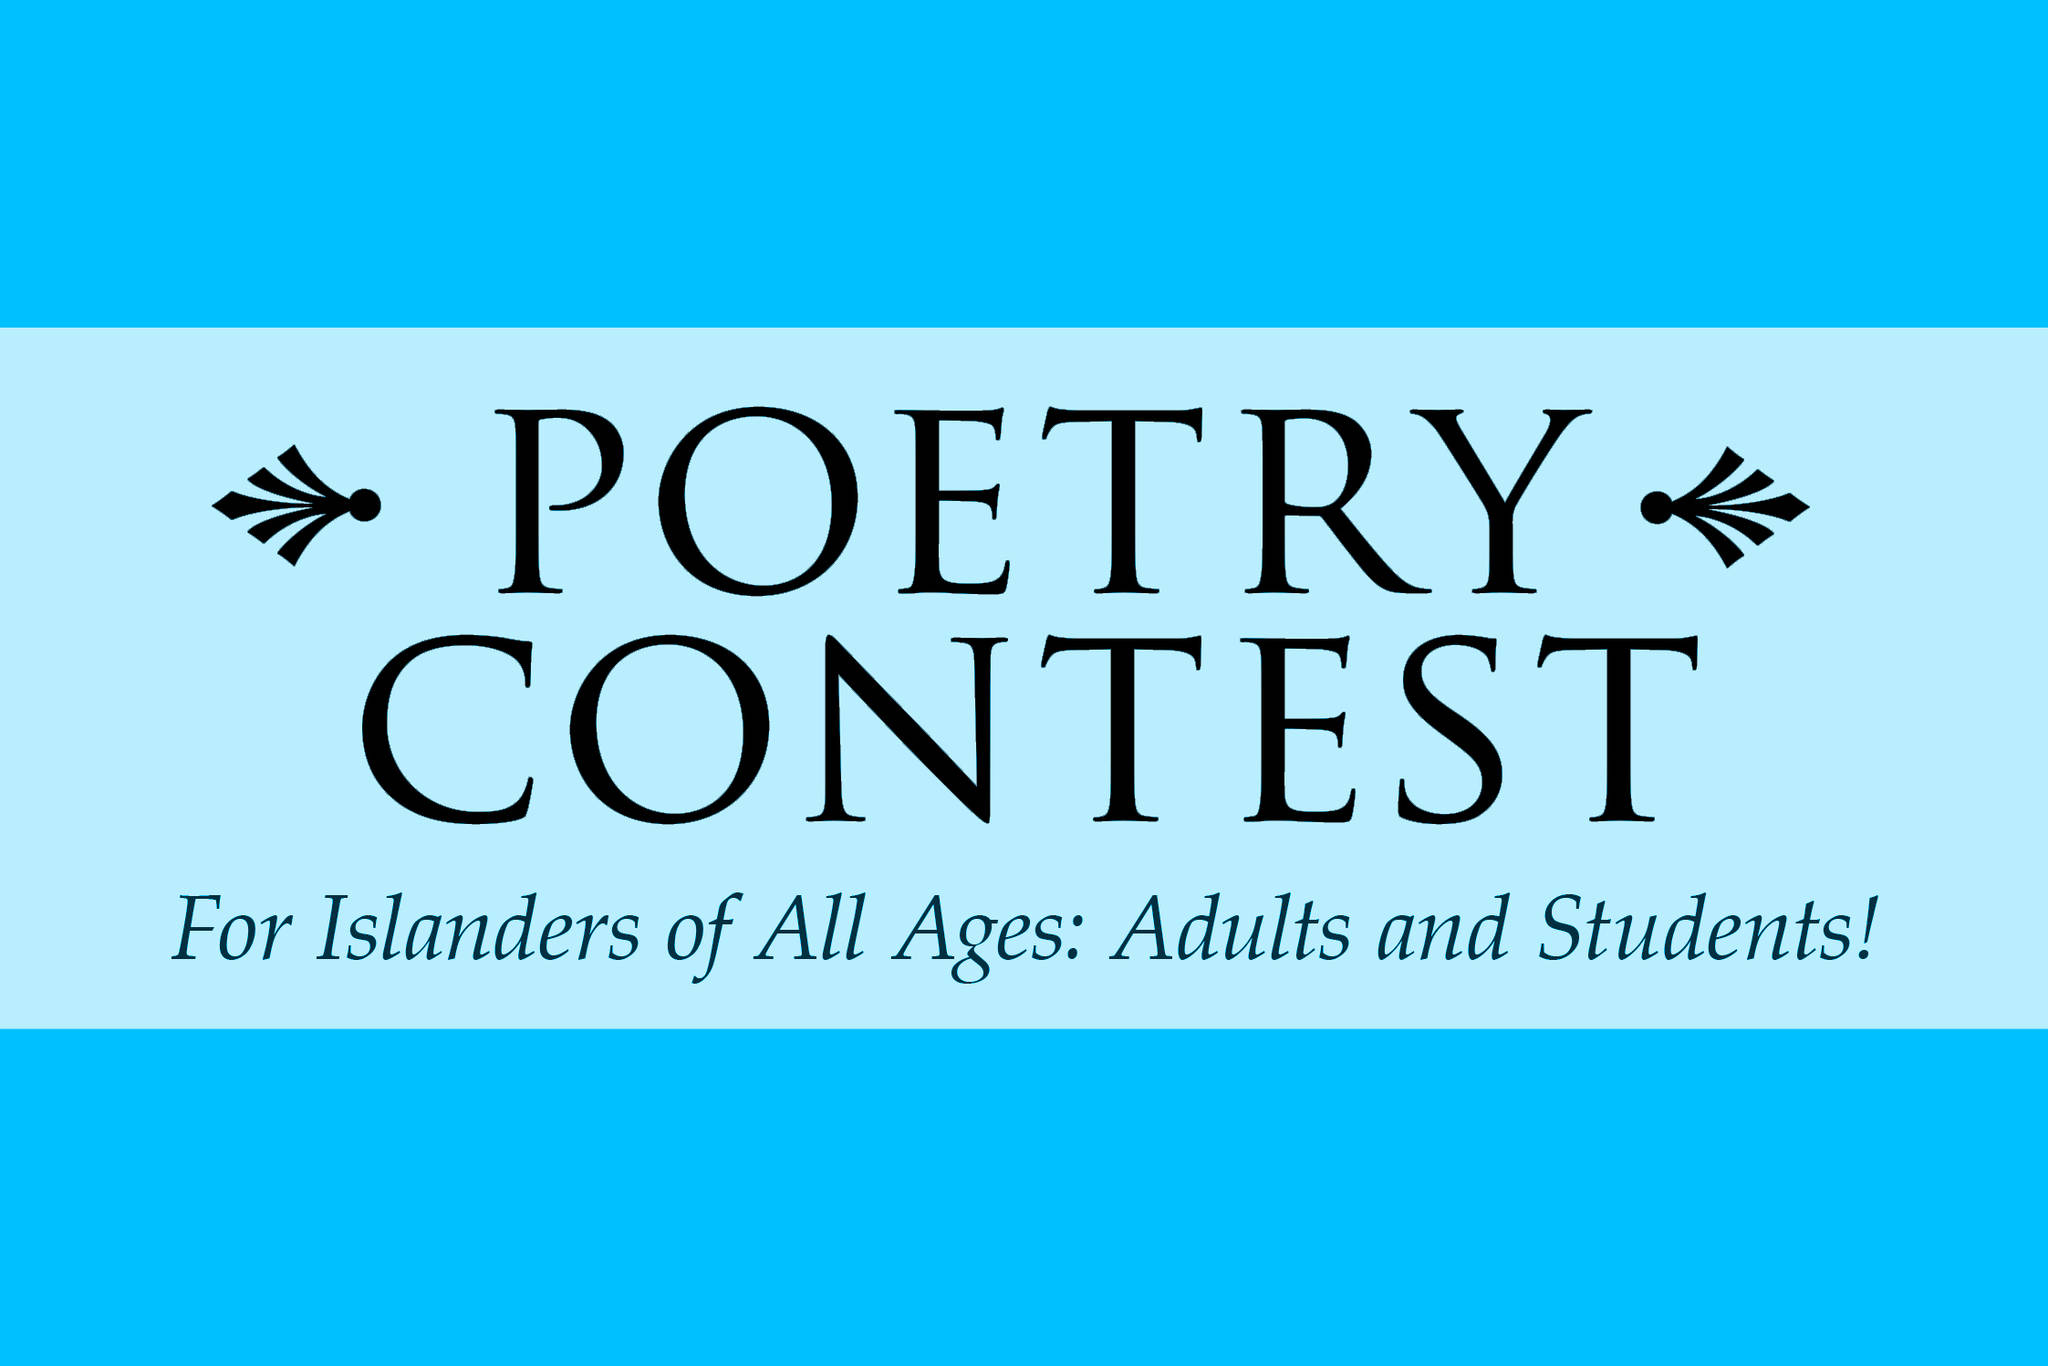 Garden poetry contest open now